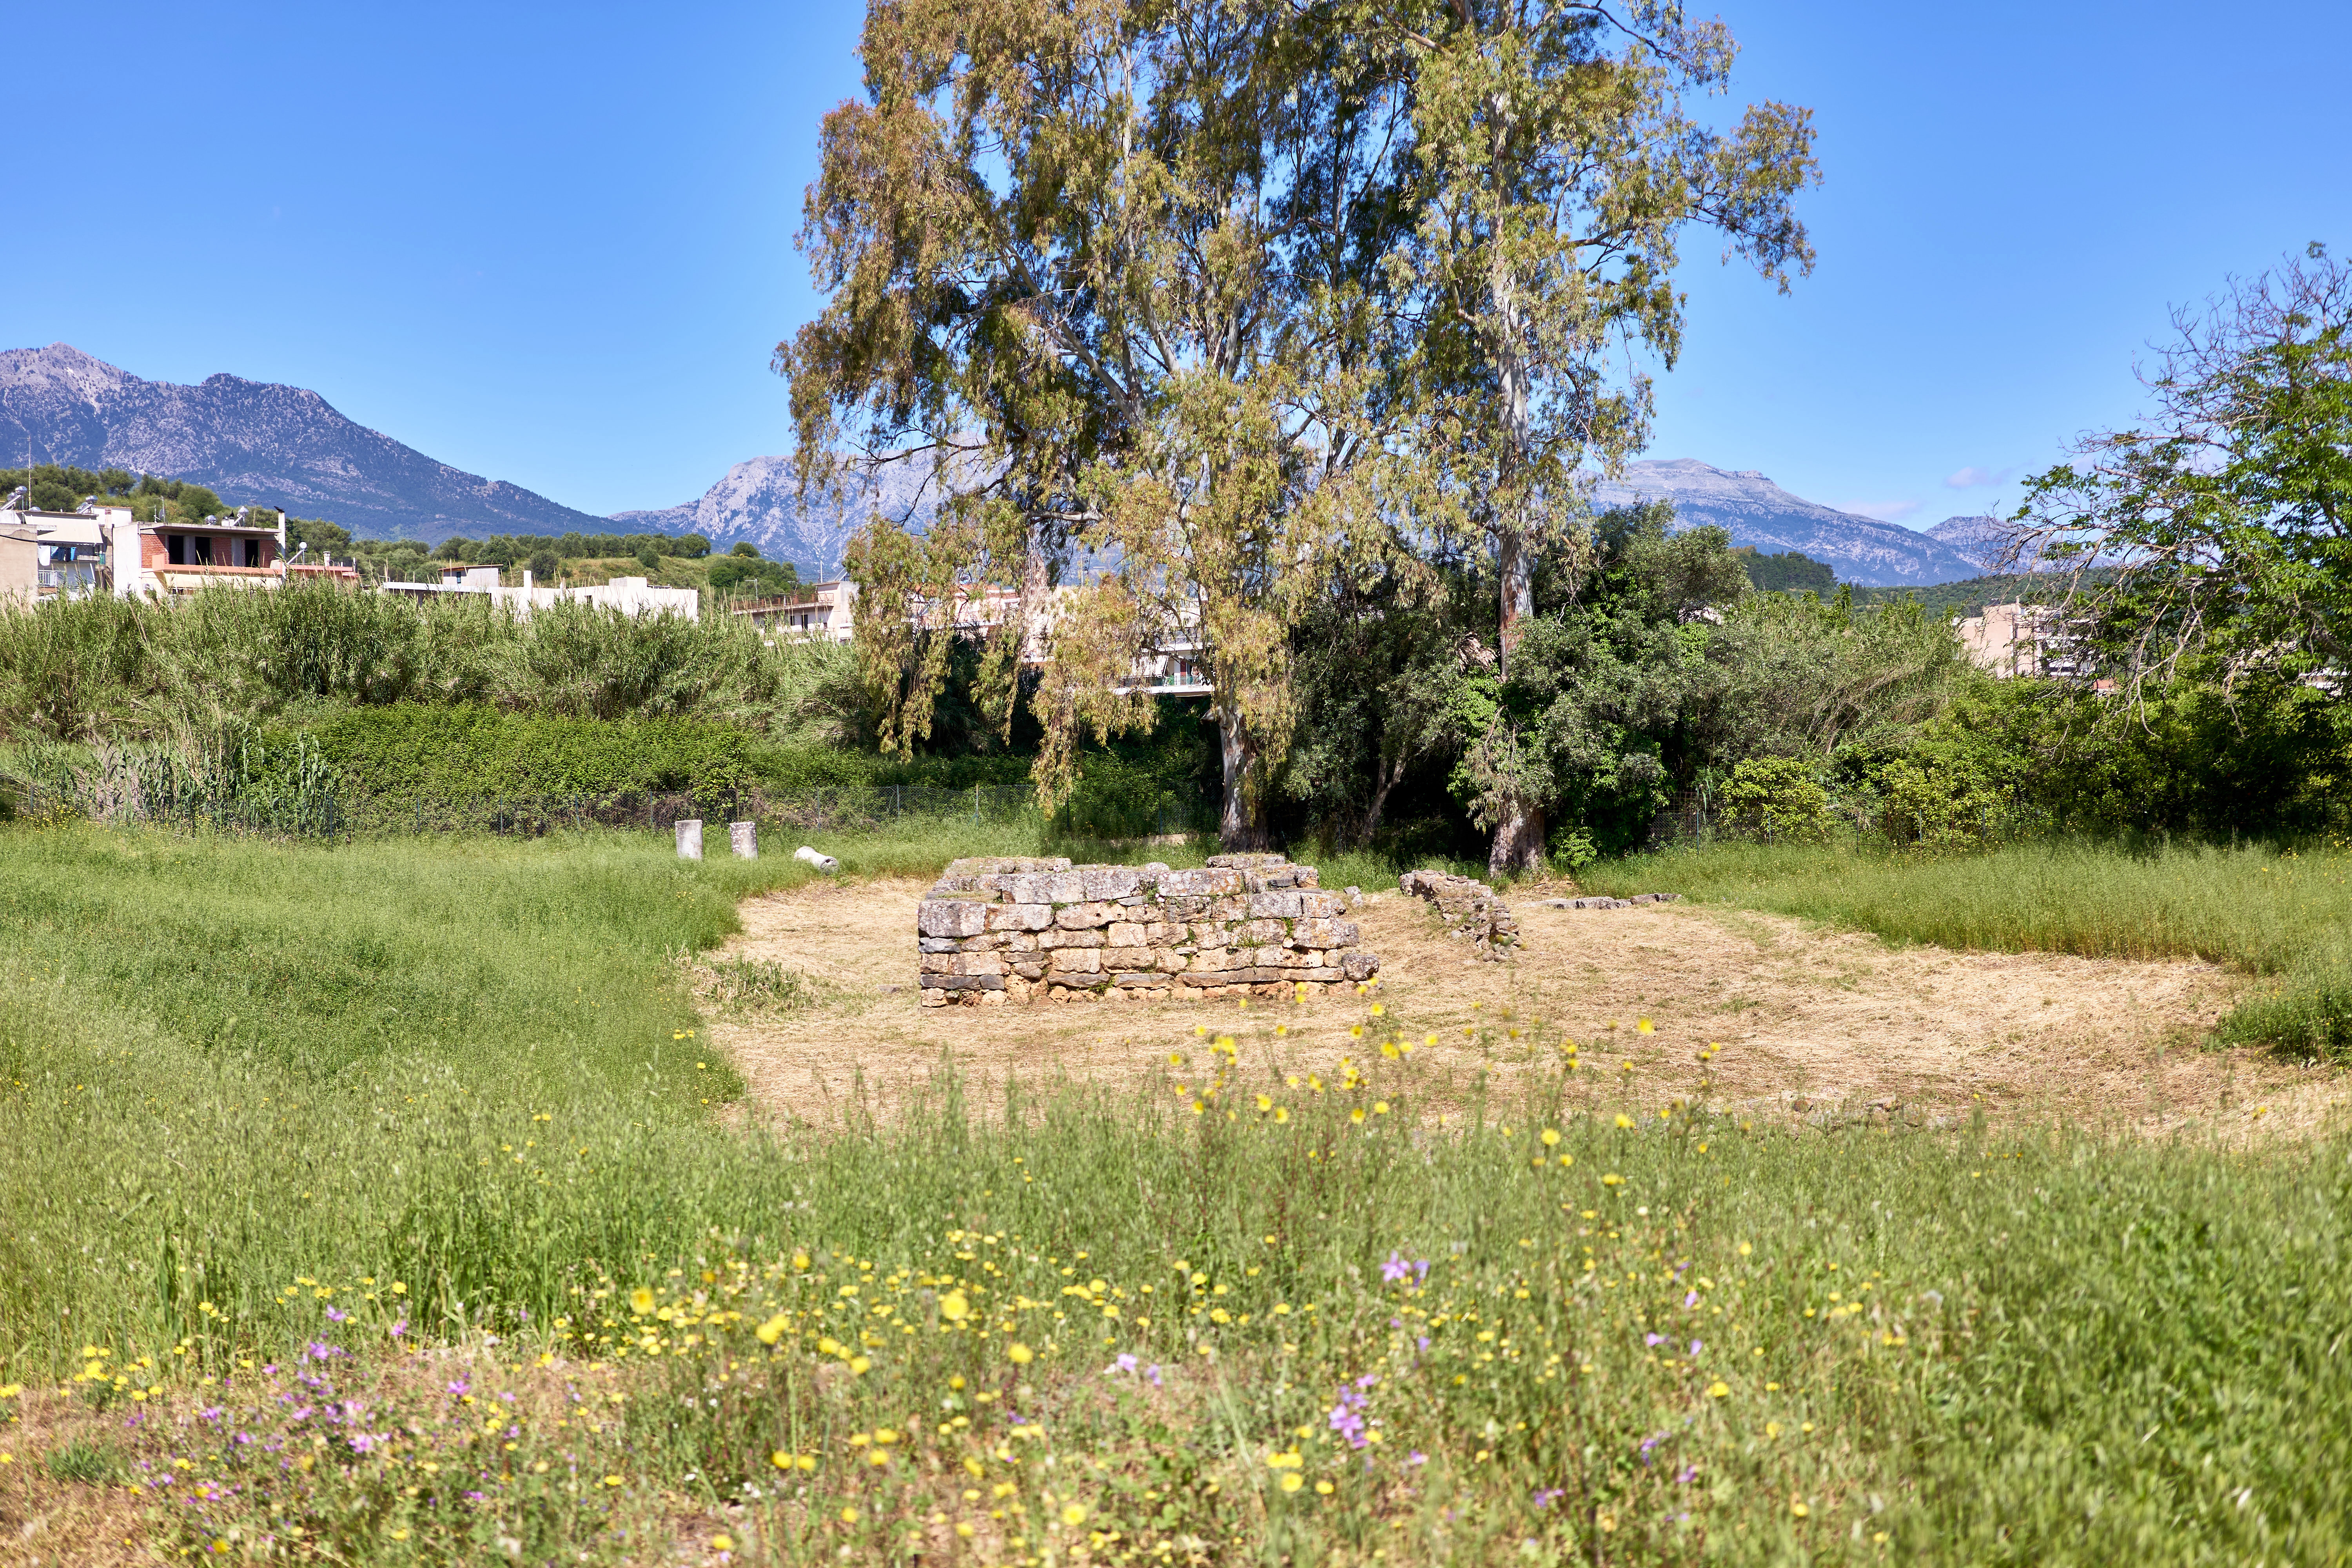 Artemis Orthia temple